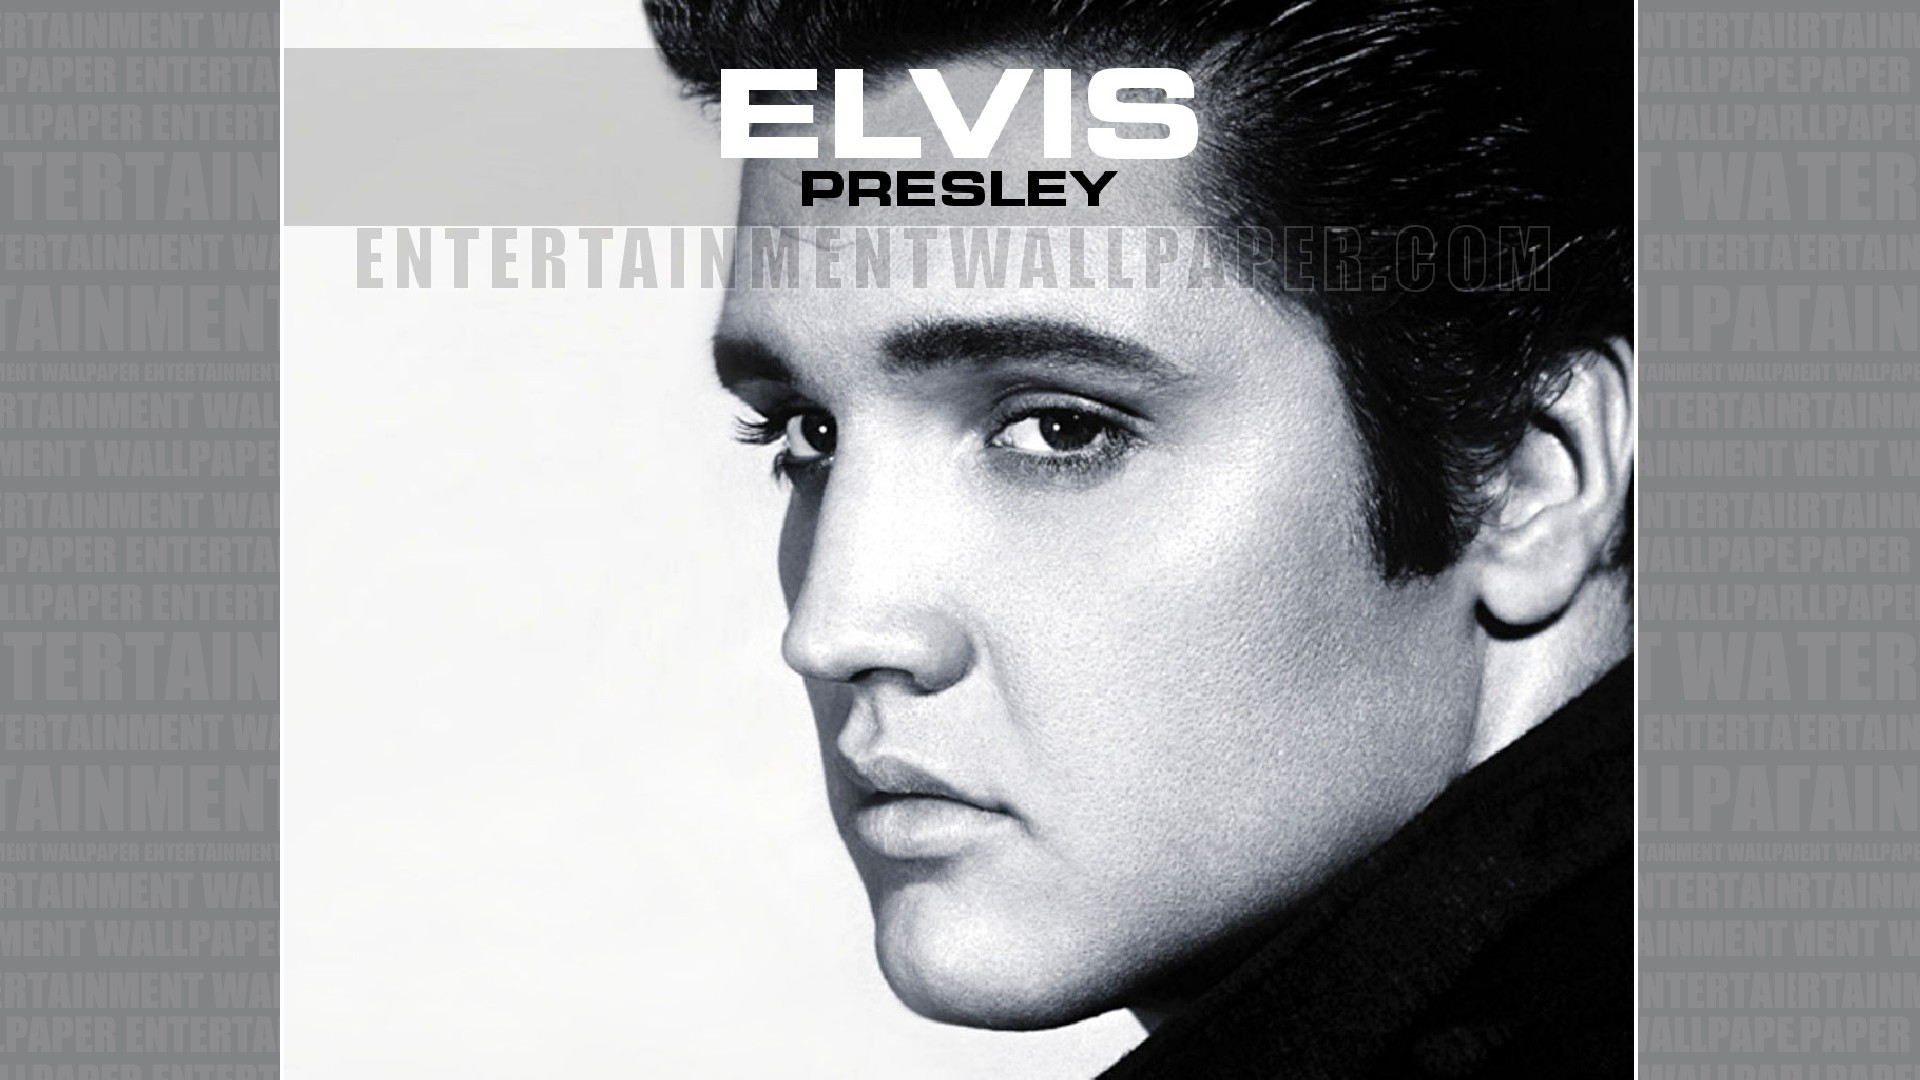 Elvis Presley Wallpaper – Original size, download now.